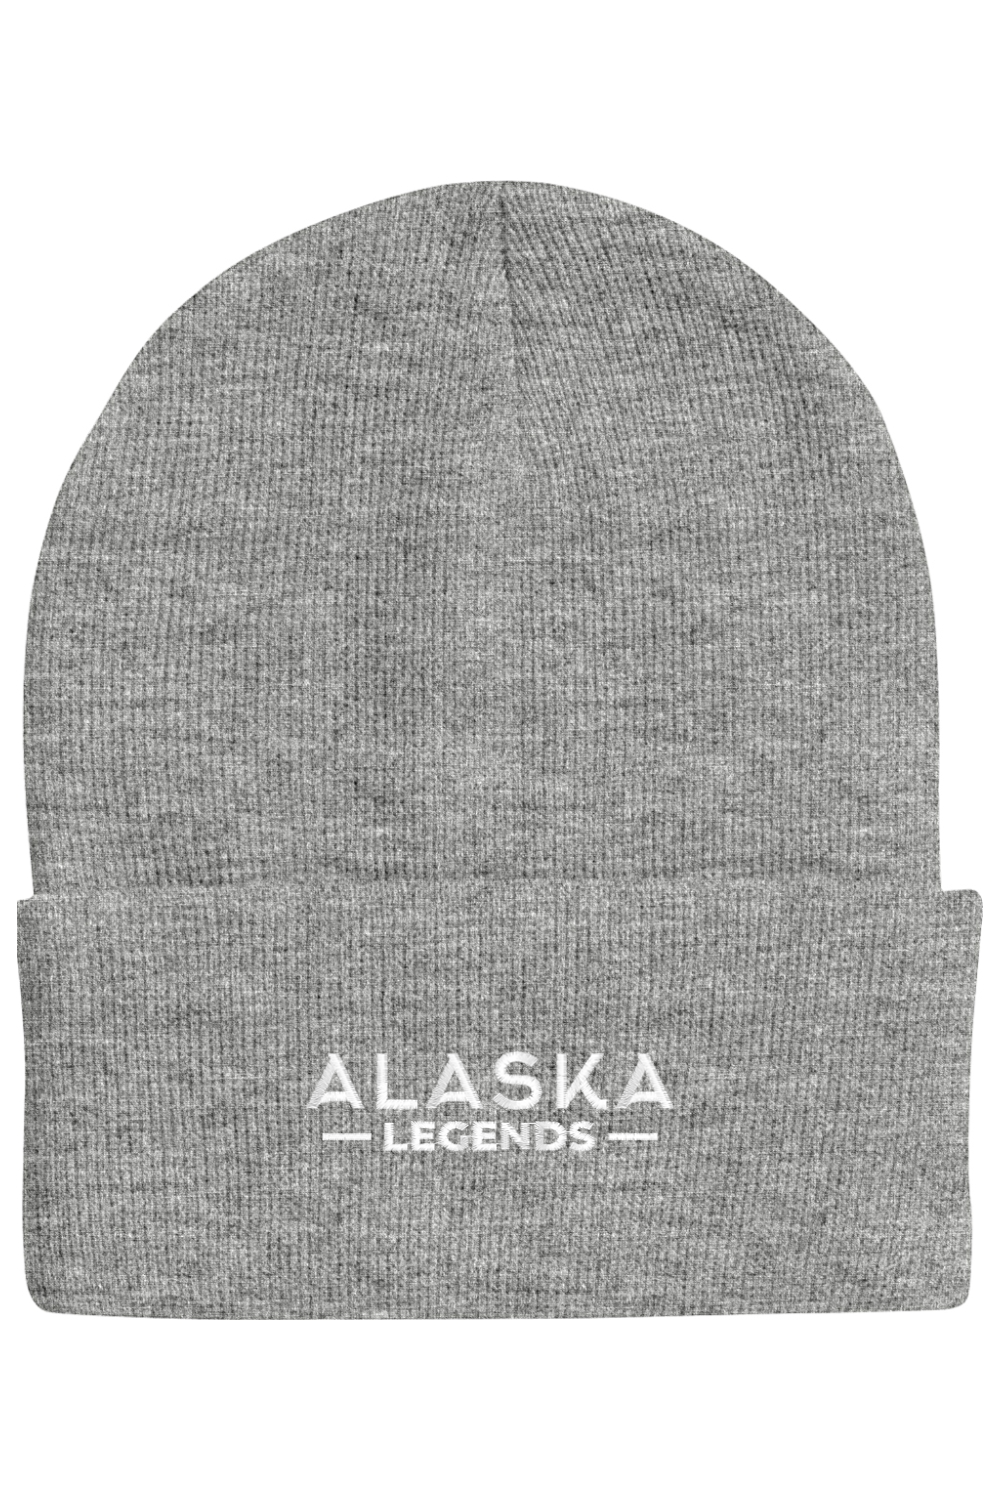 Alaska Legends Beanie